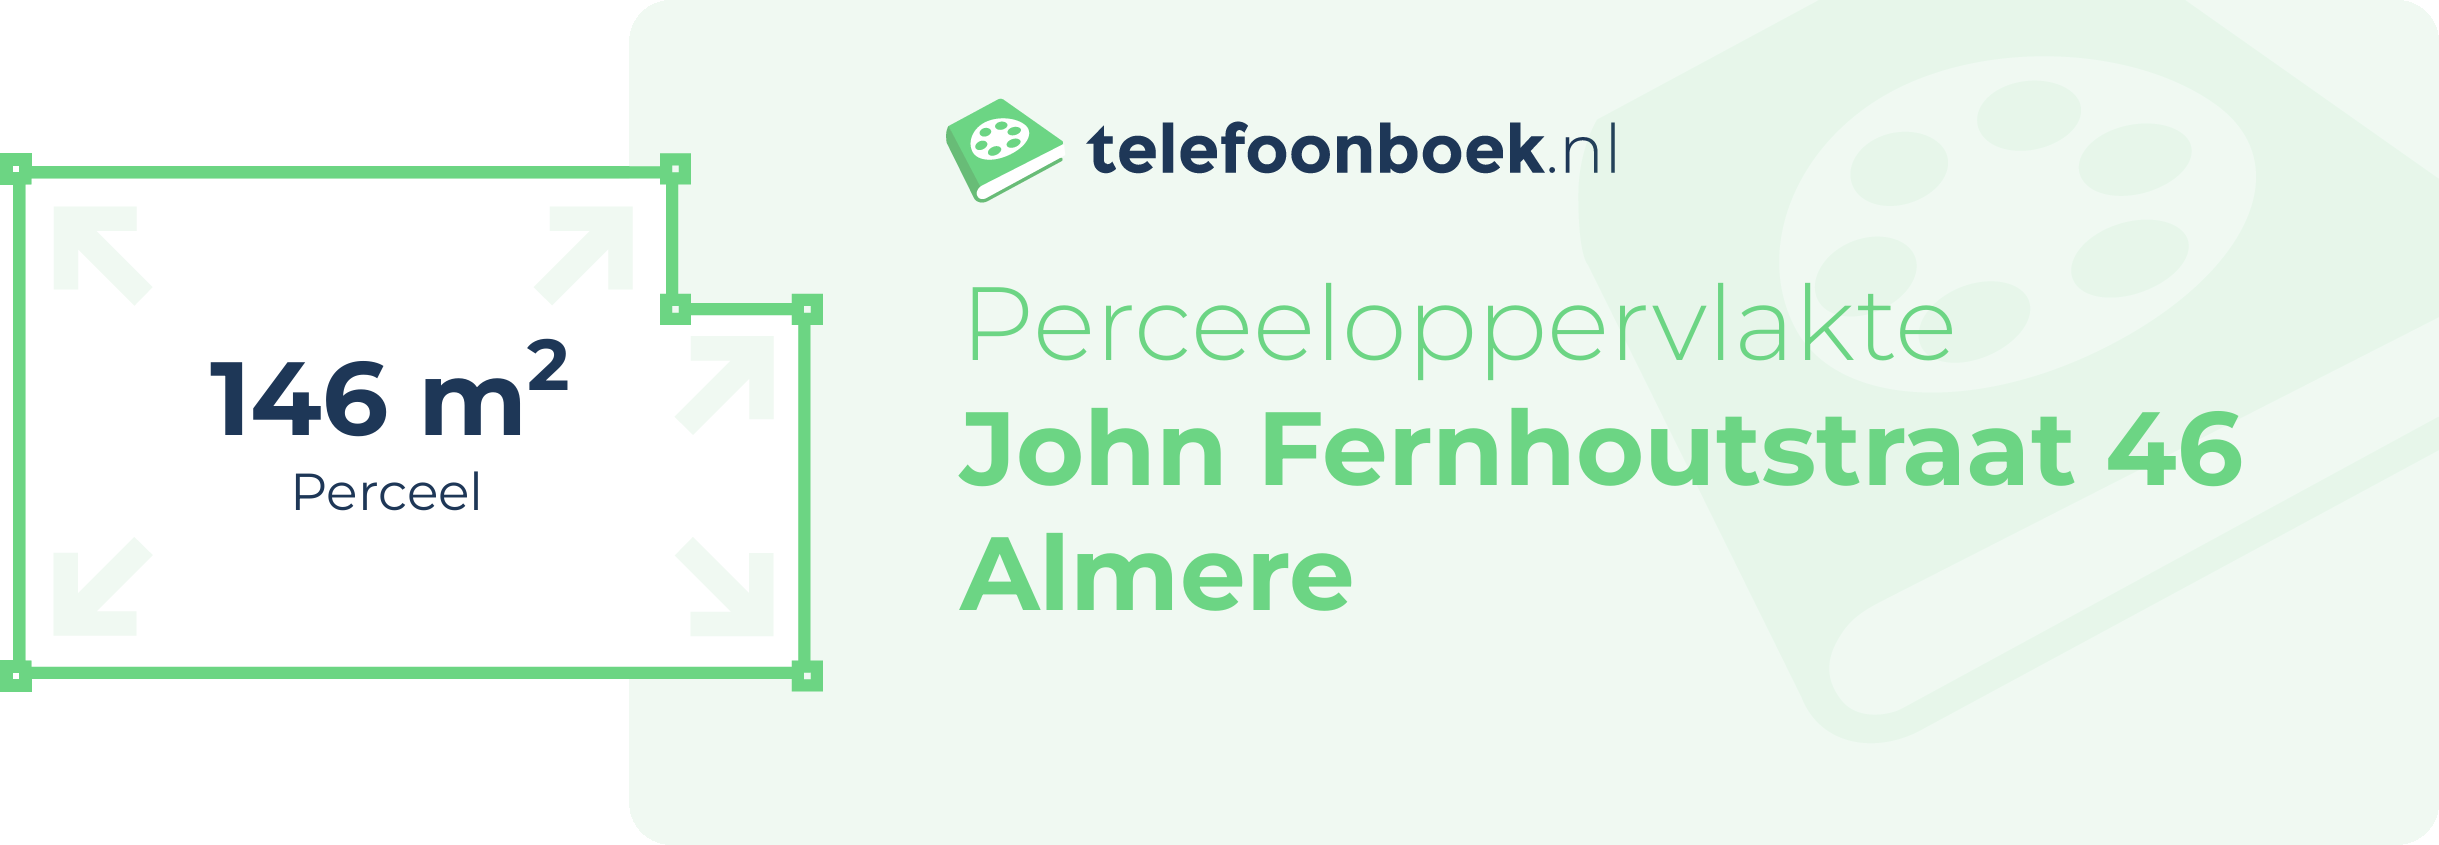 Perceeloppervlakte John Fernhoutstraat 46 Almere